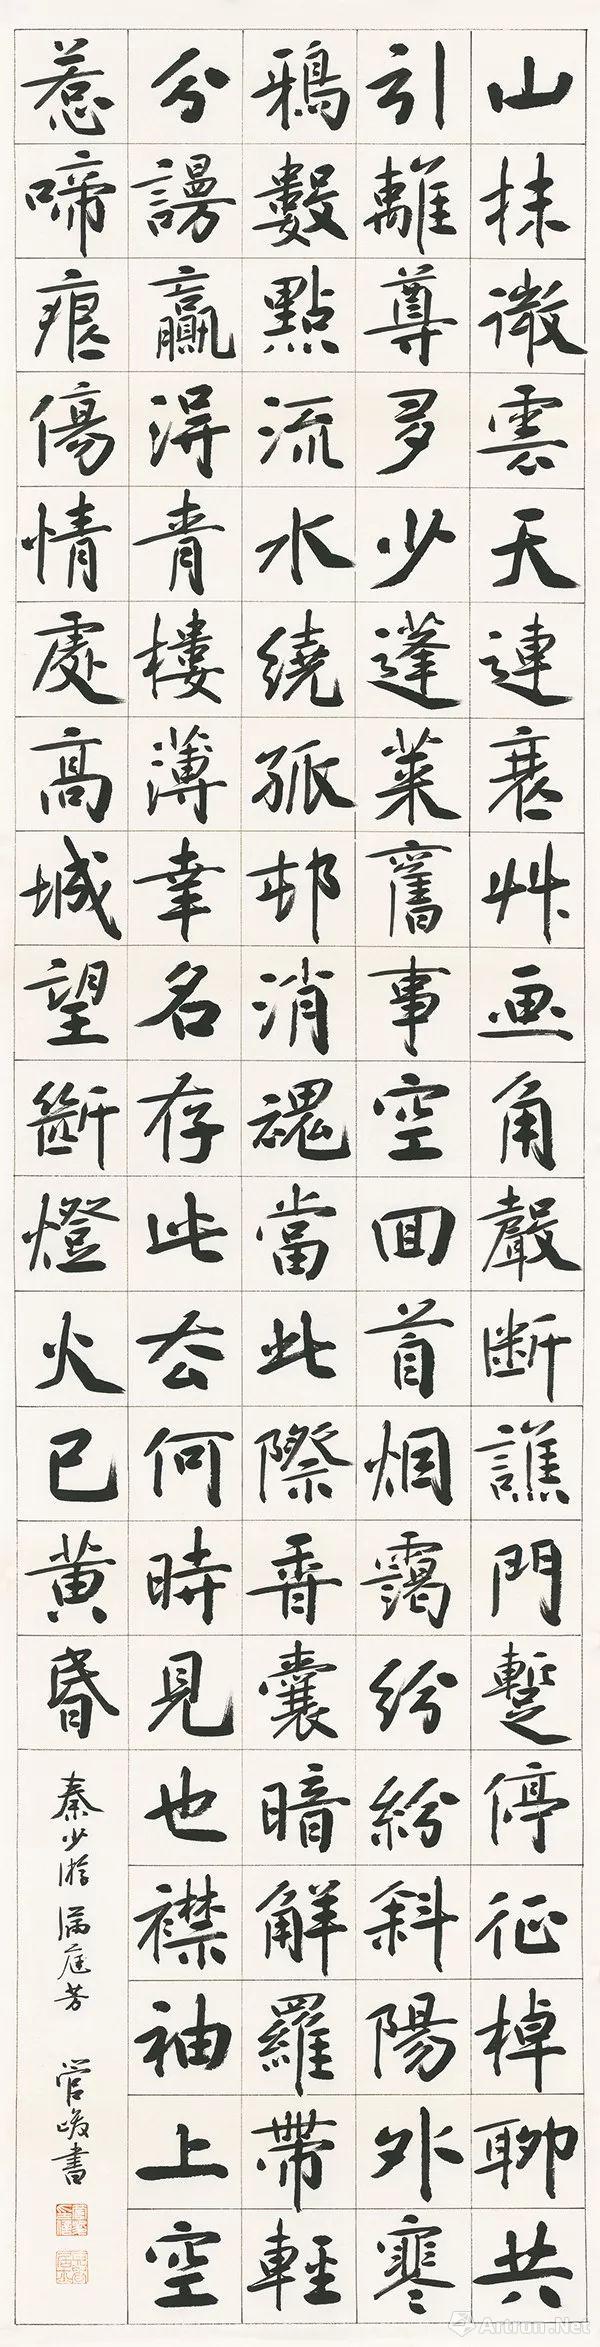 【雅昌快讯】南京艺术学院中国画,书法专业改革开放四